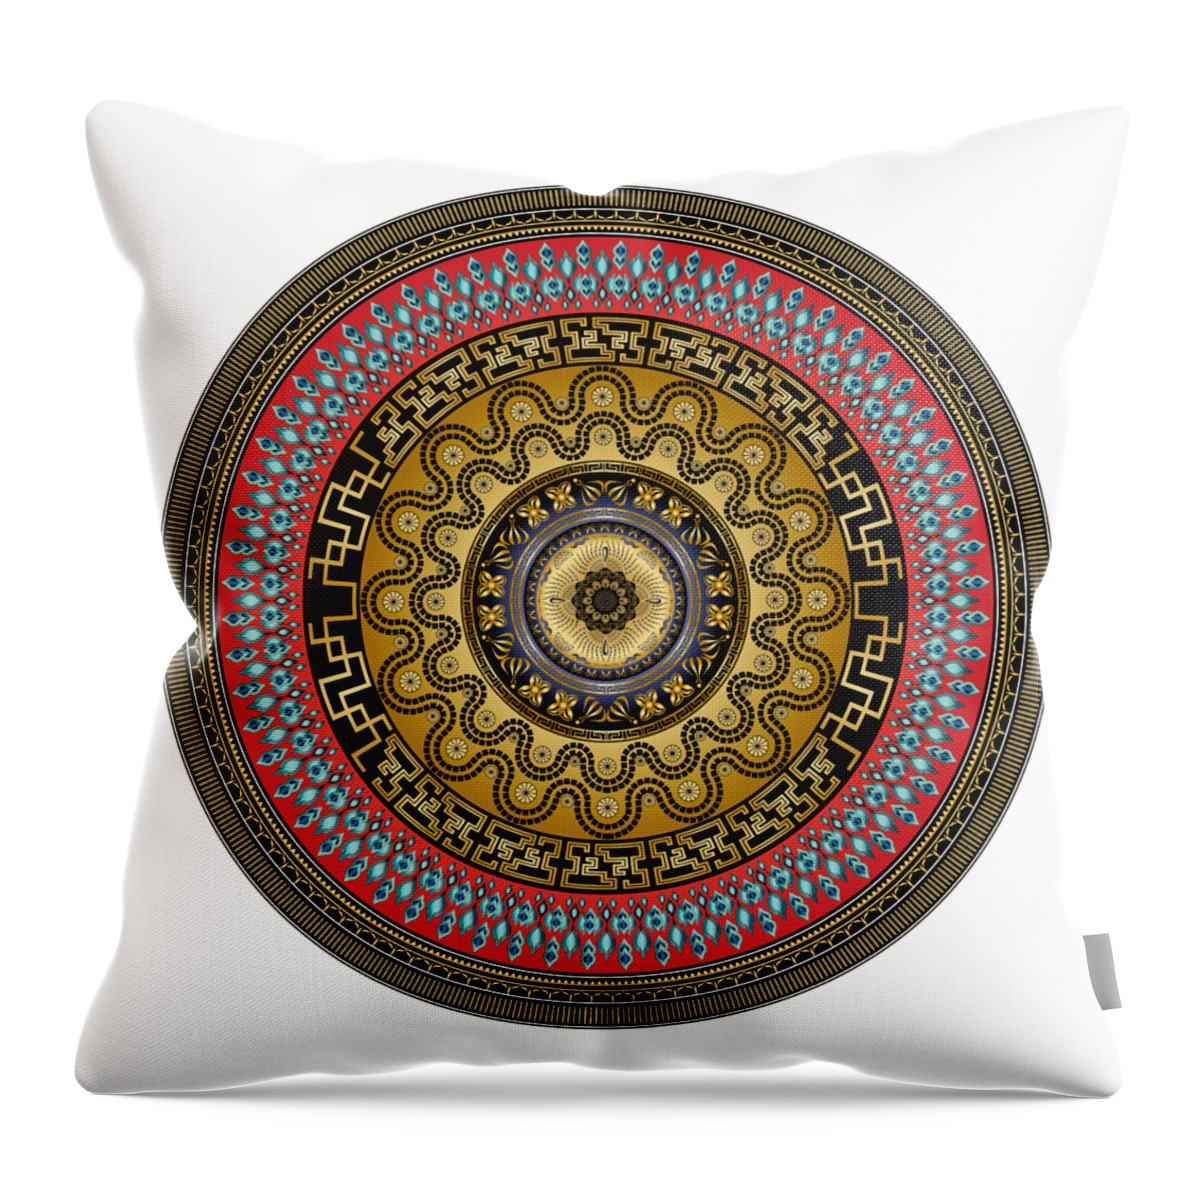 Mandala Throw Pillow featuring the digital art Circularium No. 2644 by Alan Bennington